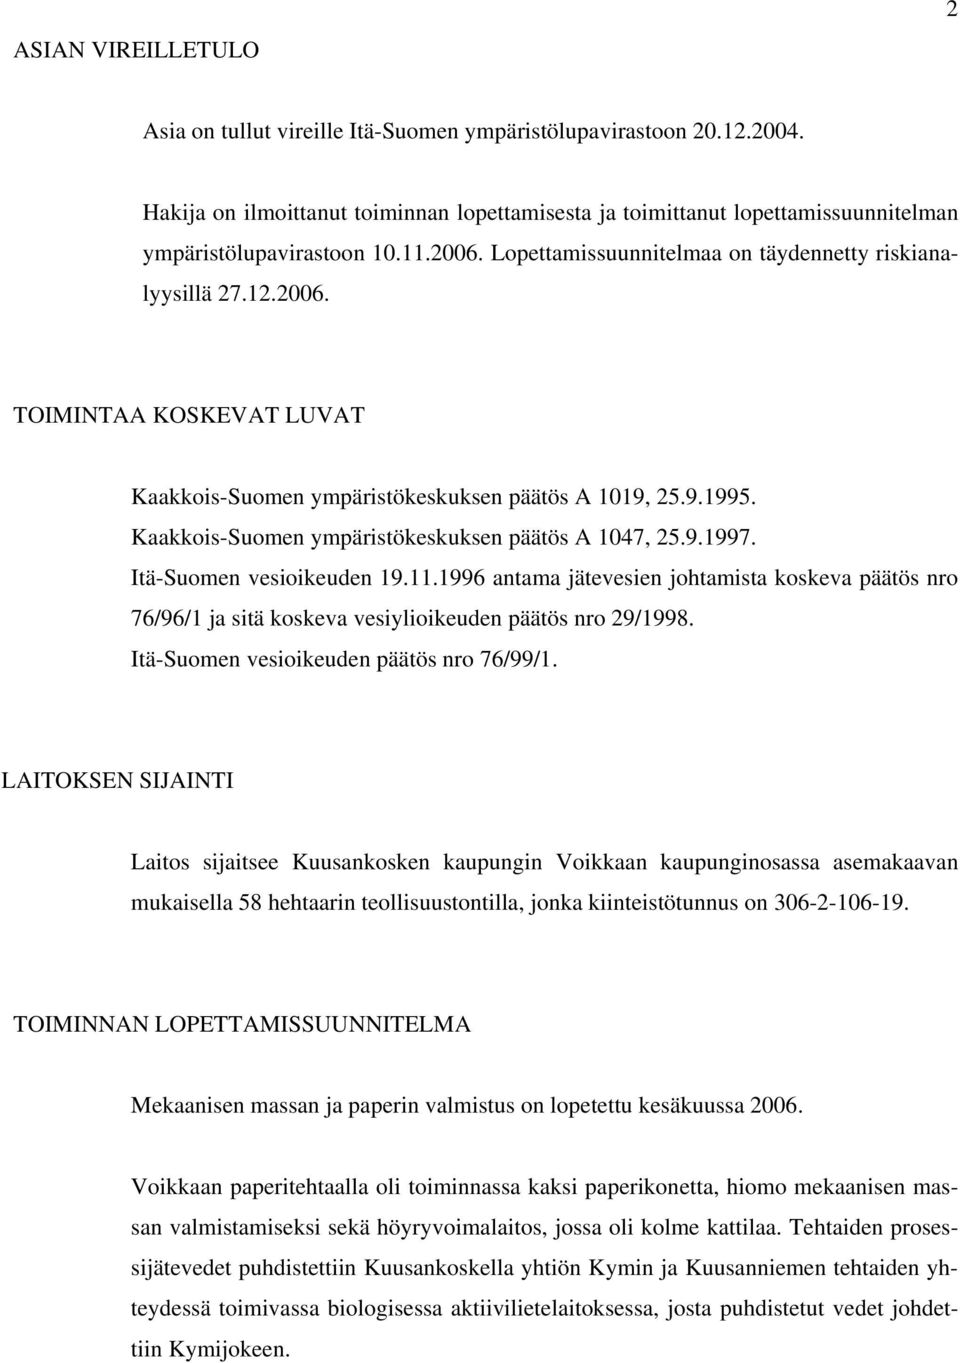 9.1995. Kaakkois-Suomen ympäristökeskuksen päätös A 1047, 25.9.1997. Itä-Suomen vesioikeuden 19.11.